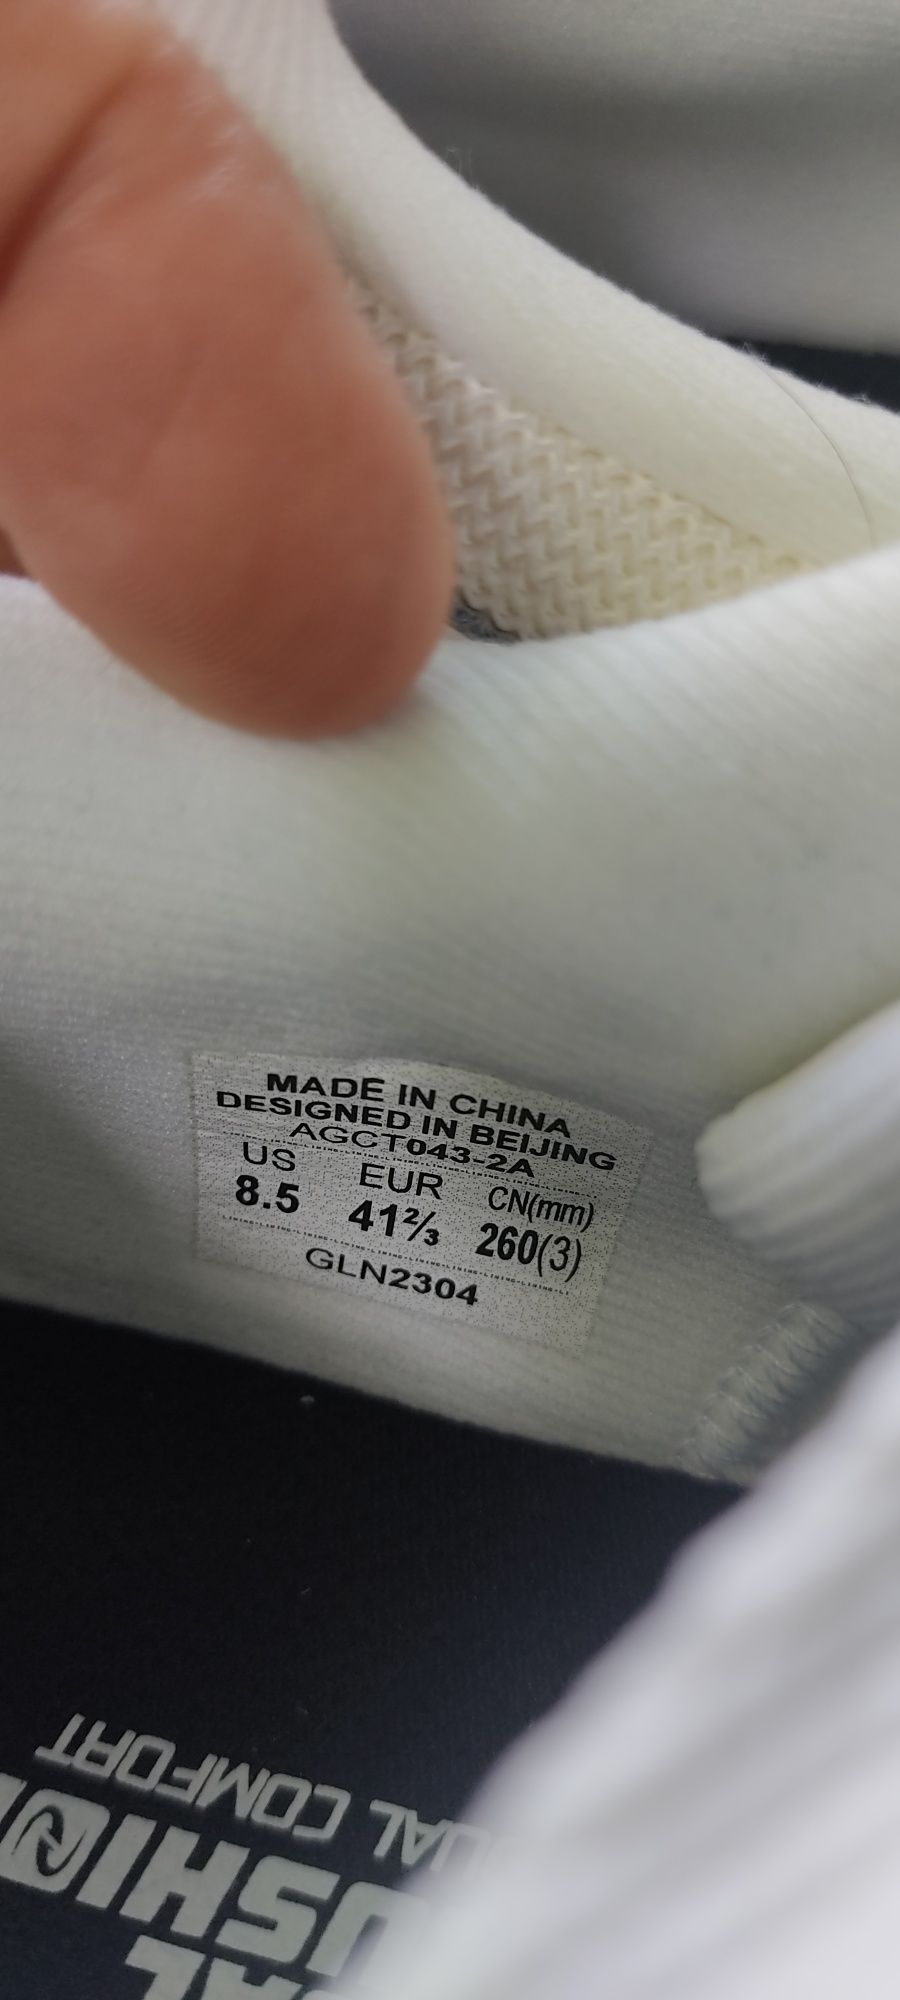 Оригинальные белые кроссовки от бренда Li-ning